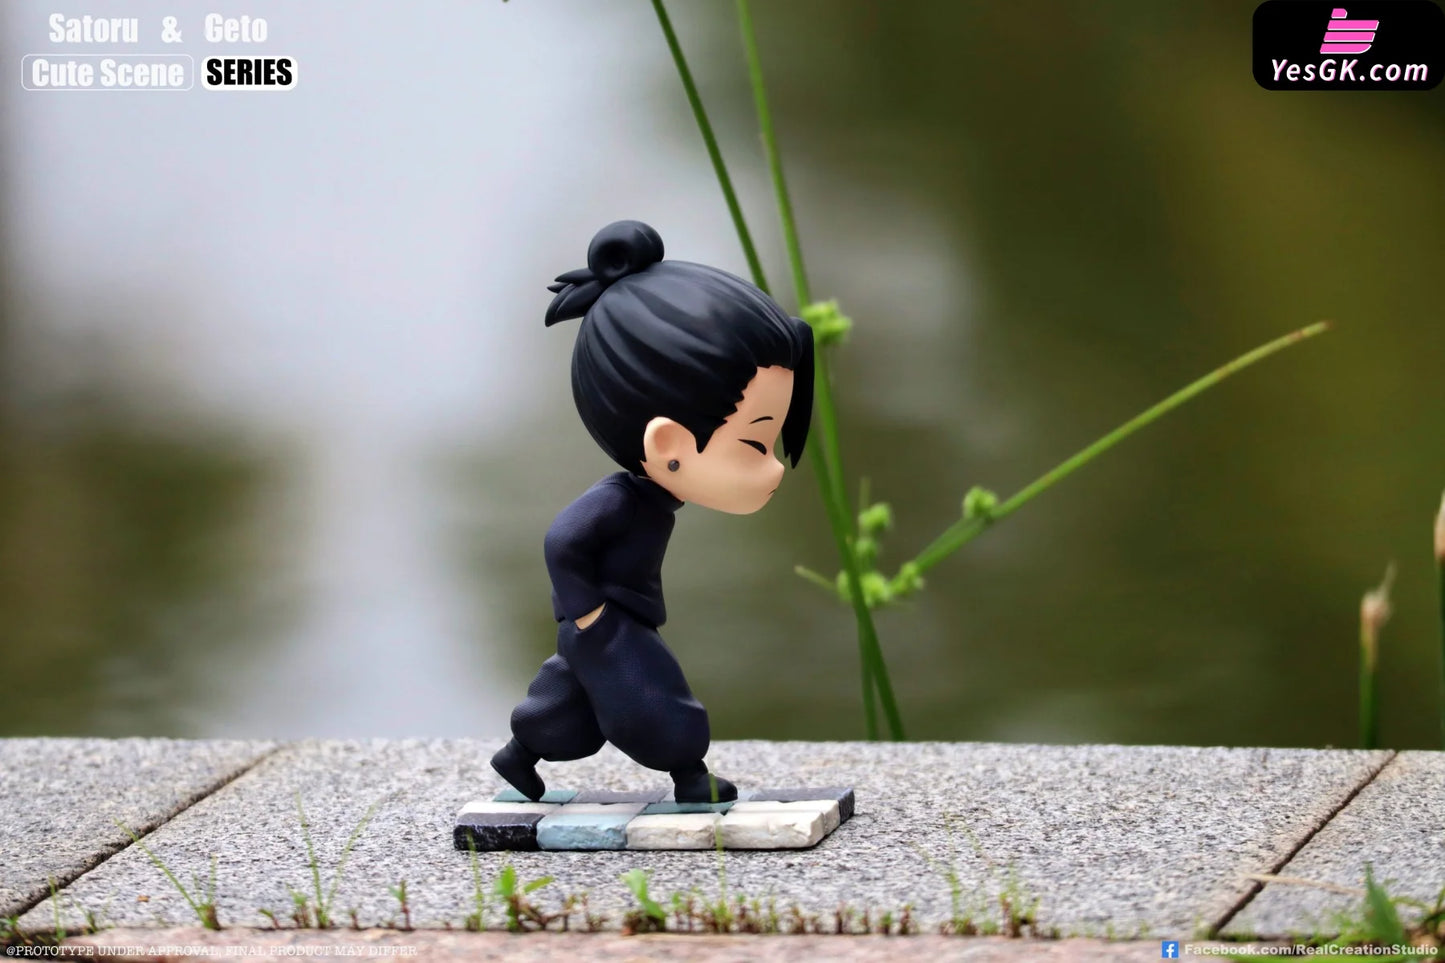 Jujutsu Kaisen Cute Scene Series: Gojo Satoru & Suguru Geto Street Gang Statue - Real Creation